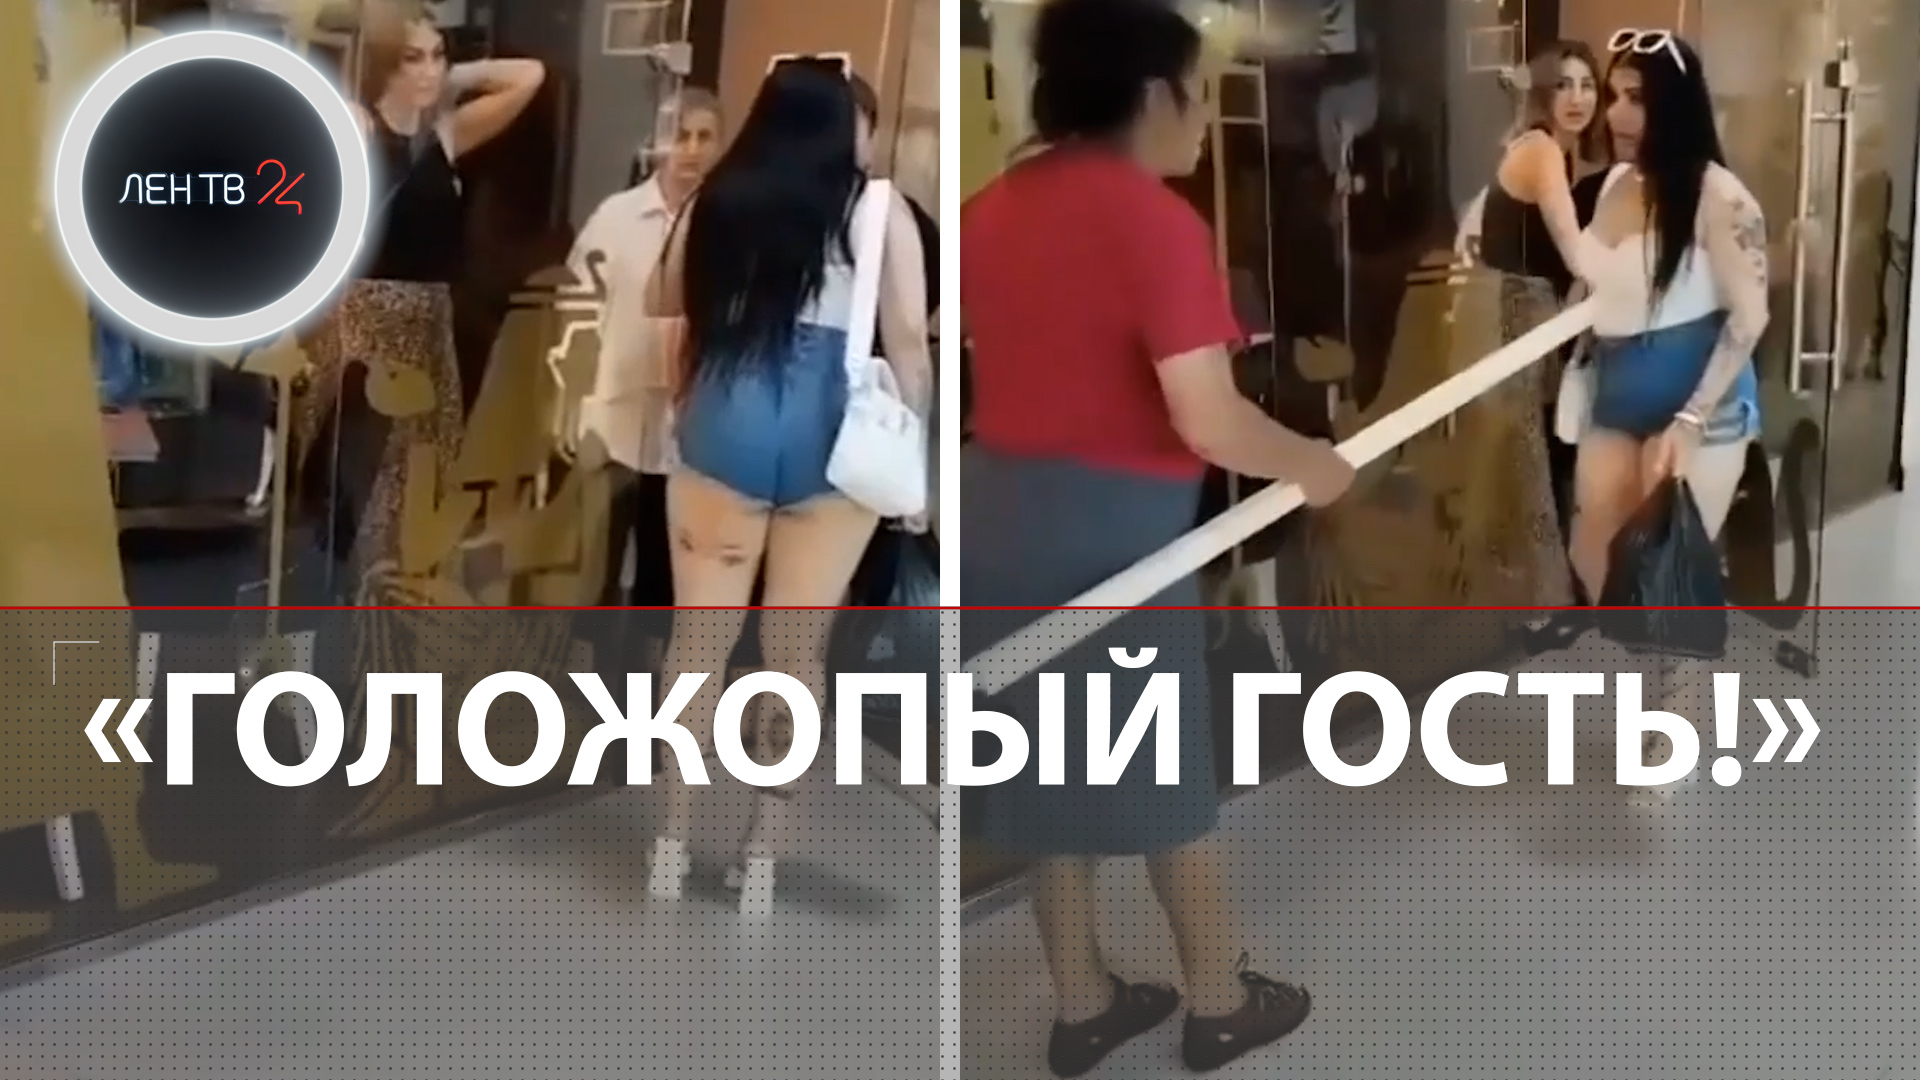 Девушку в коротких шортах не пустили в кафе во Владикавказе: мнения в комментариях разделились